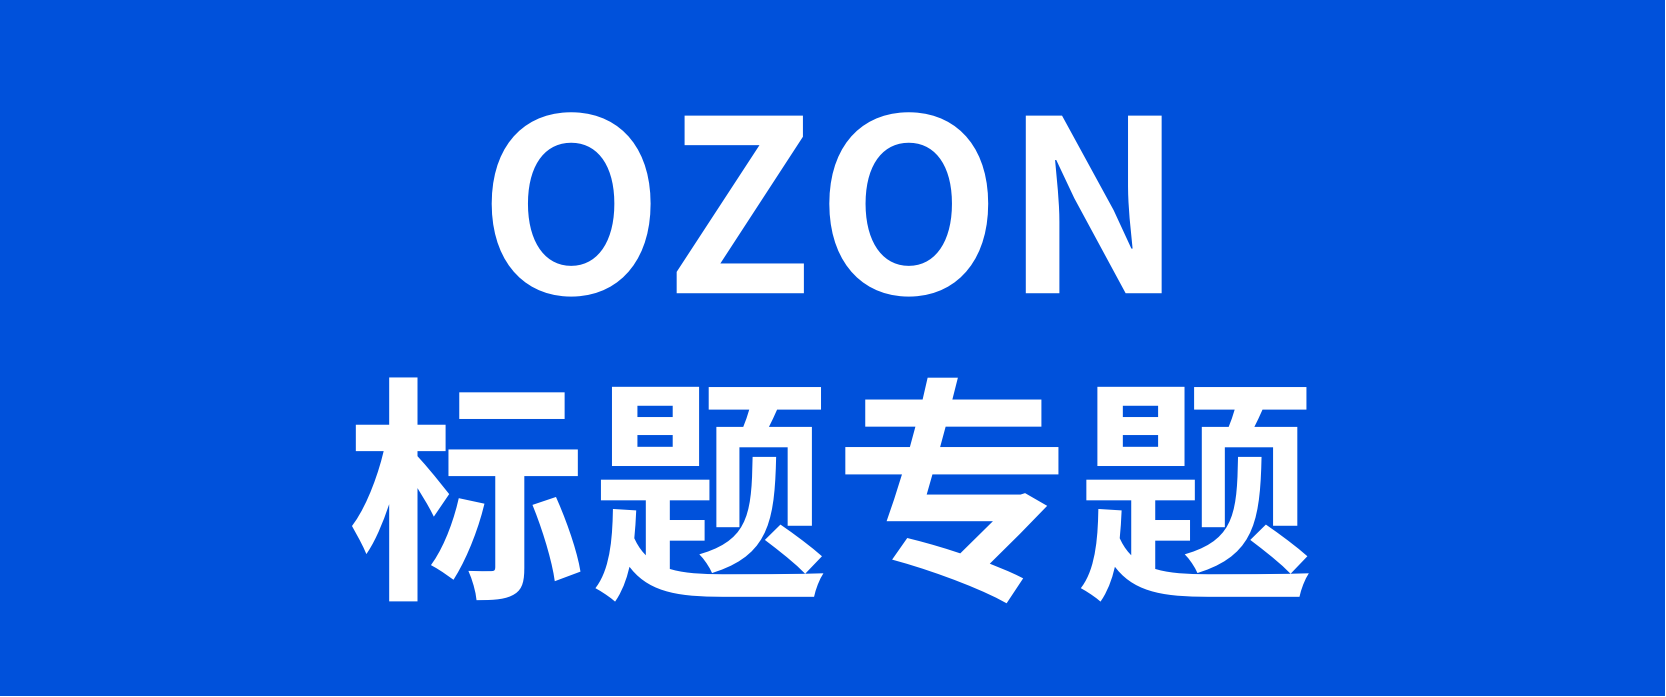 一文讲清楚OZON关键词：关键词的写法、权重逻辑以及关键词词库的搜集和建立